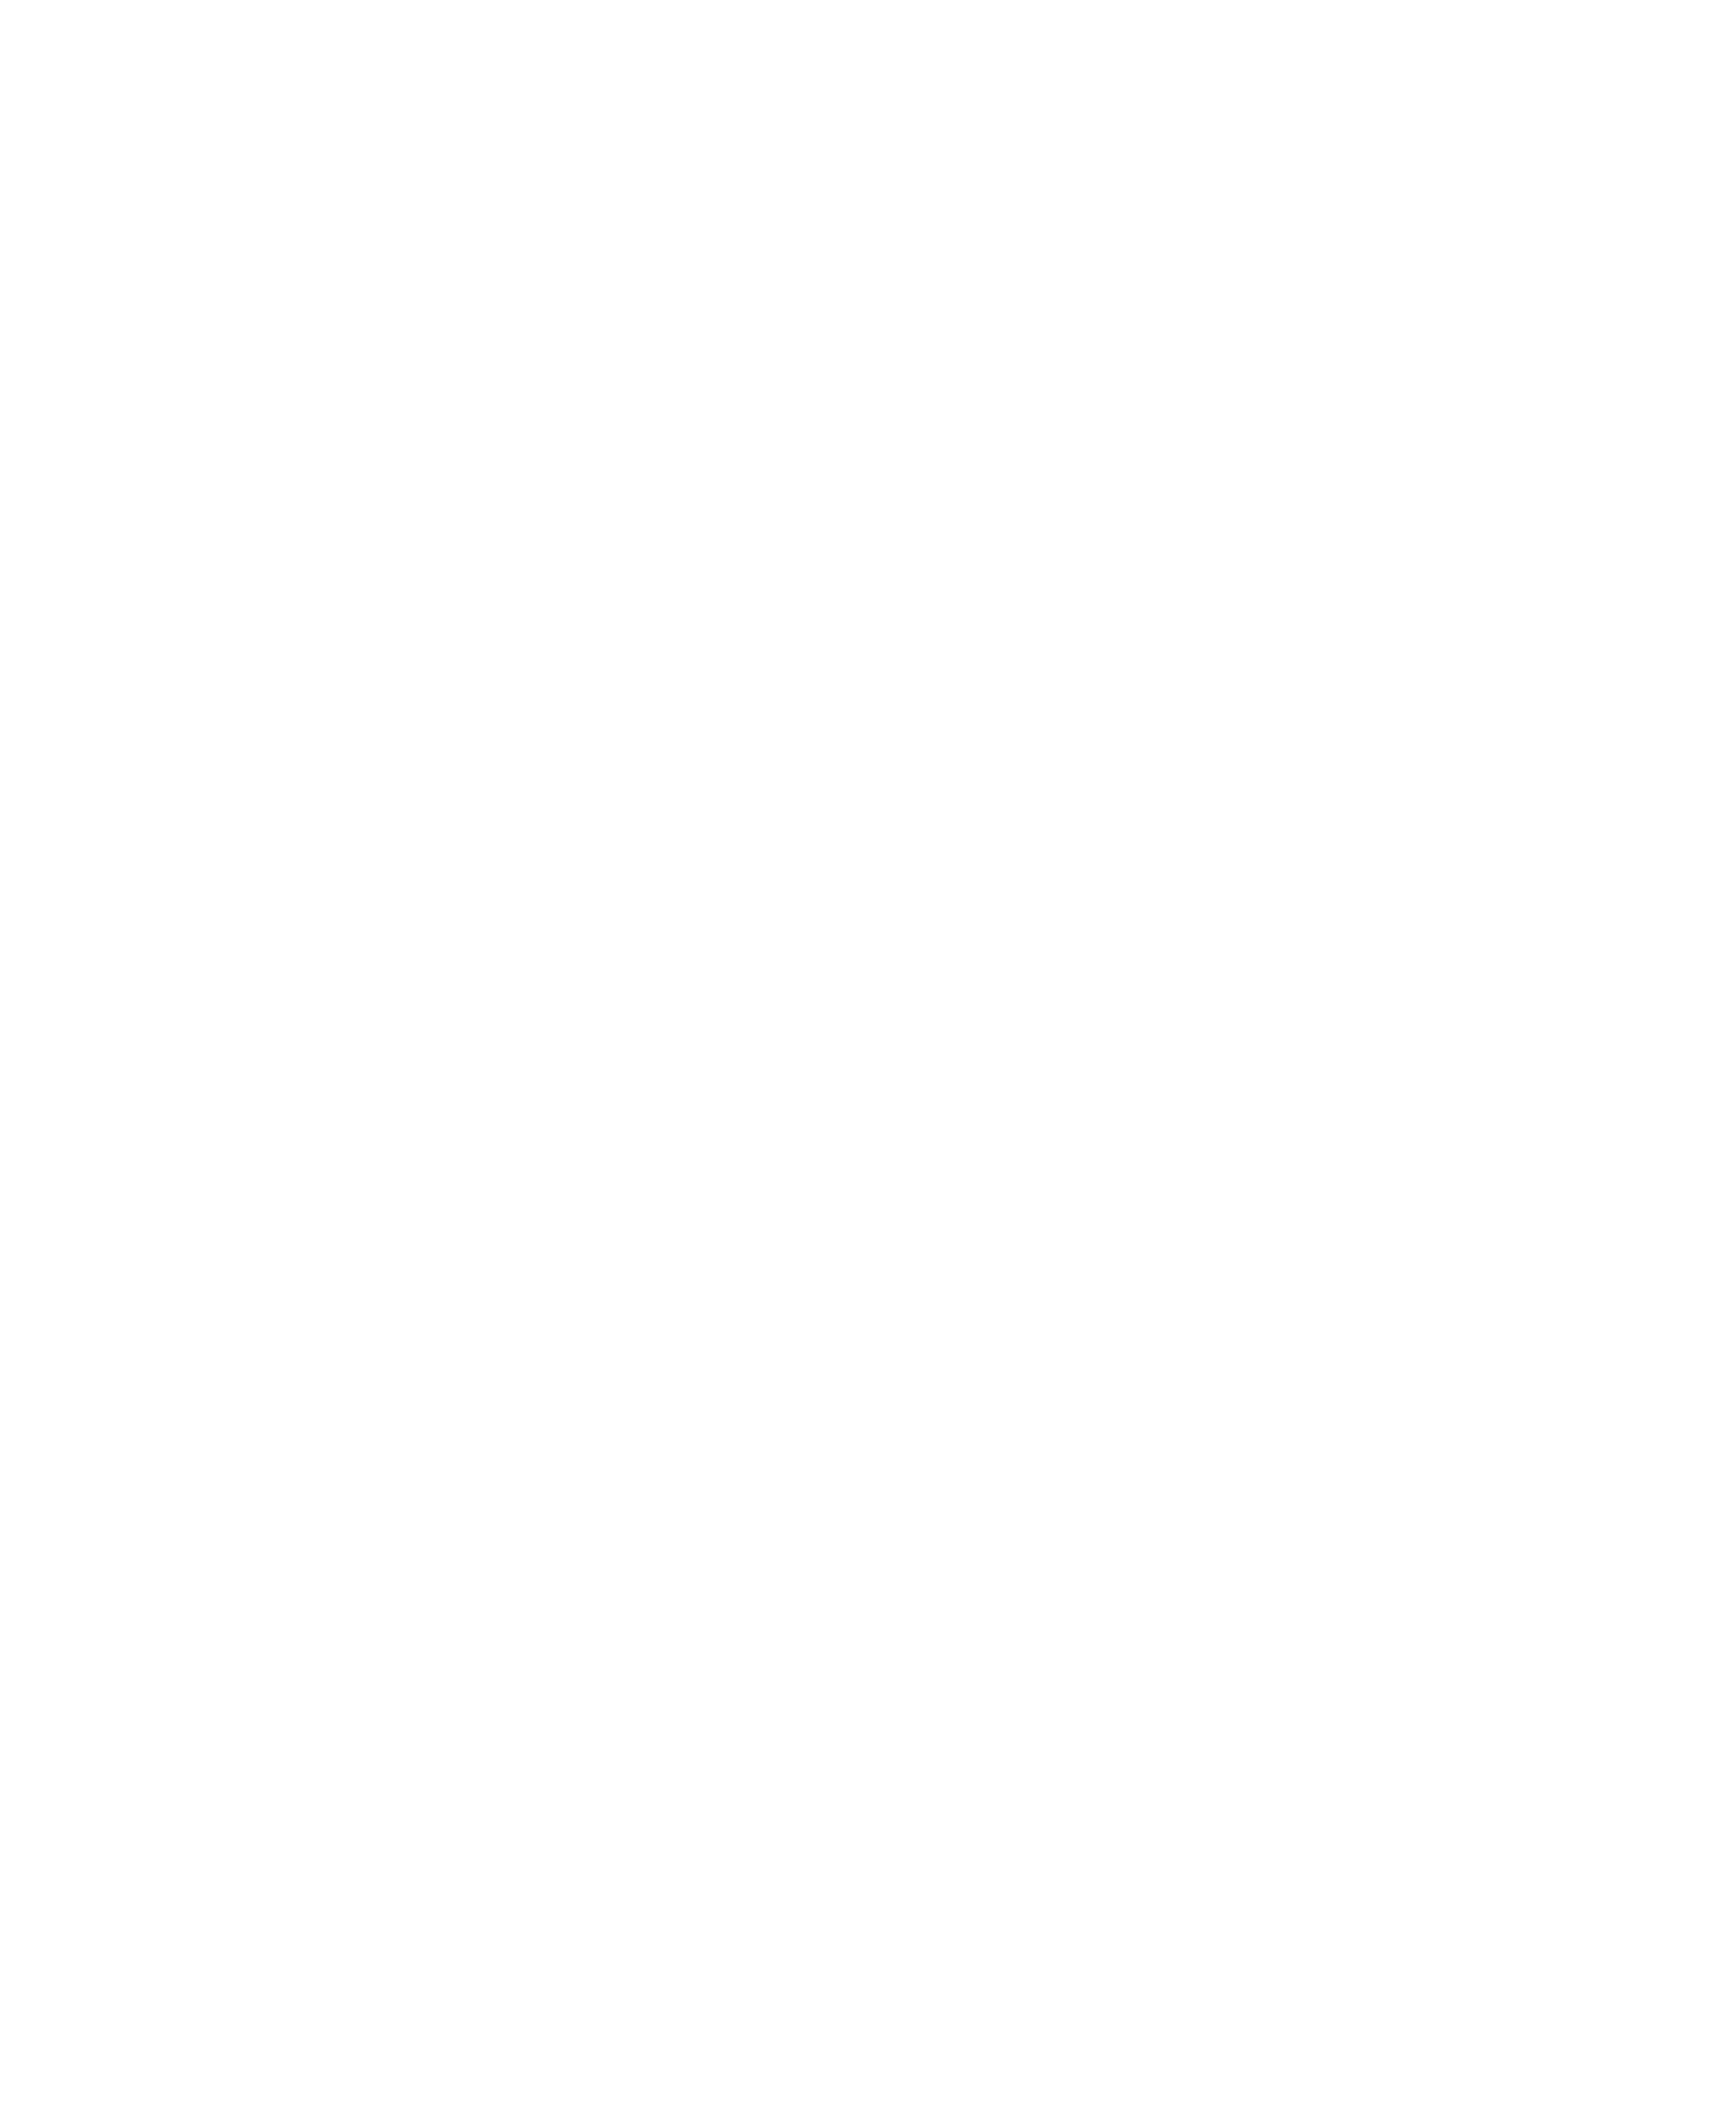 Logo von Youtube